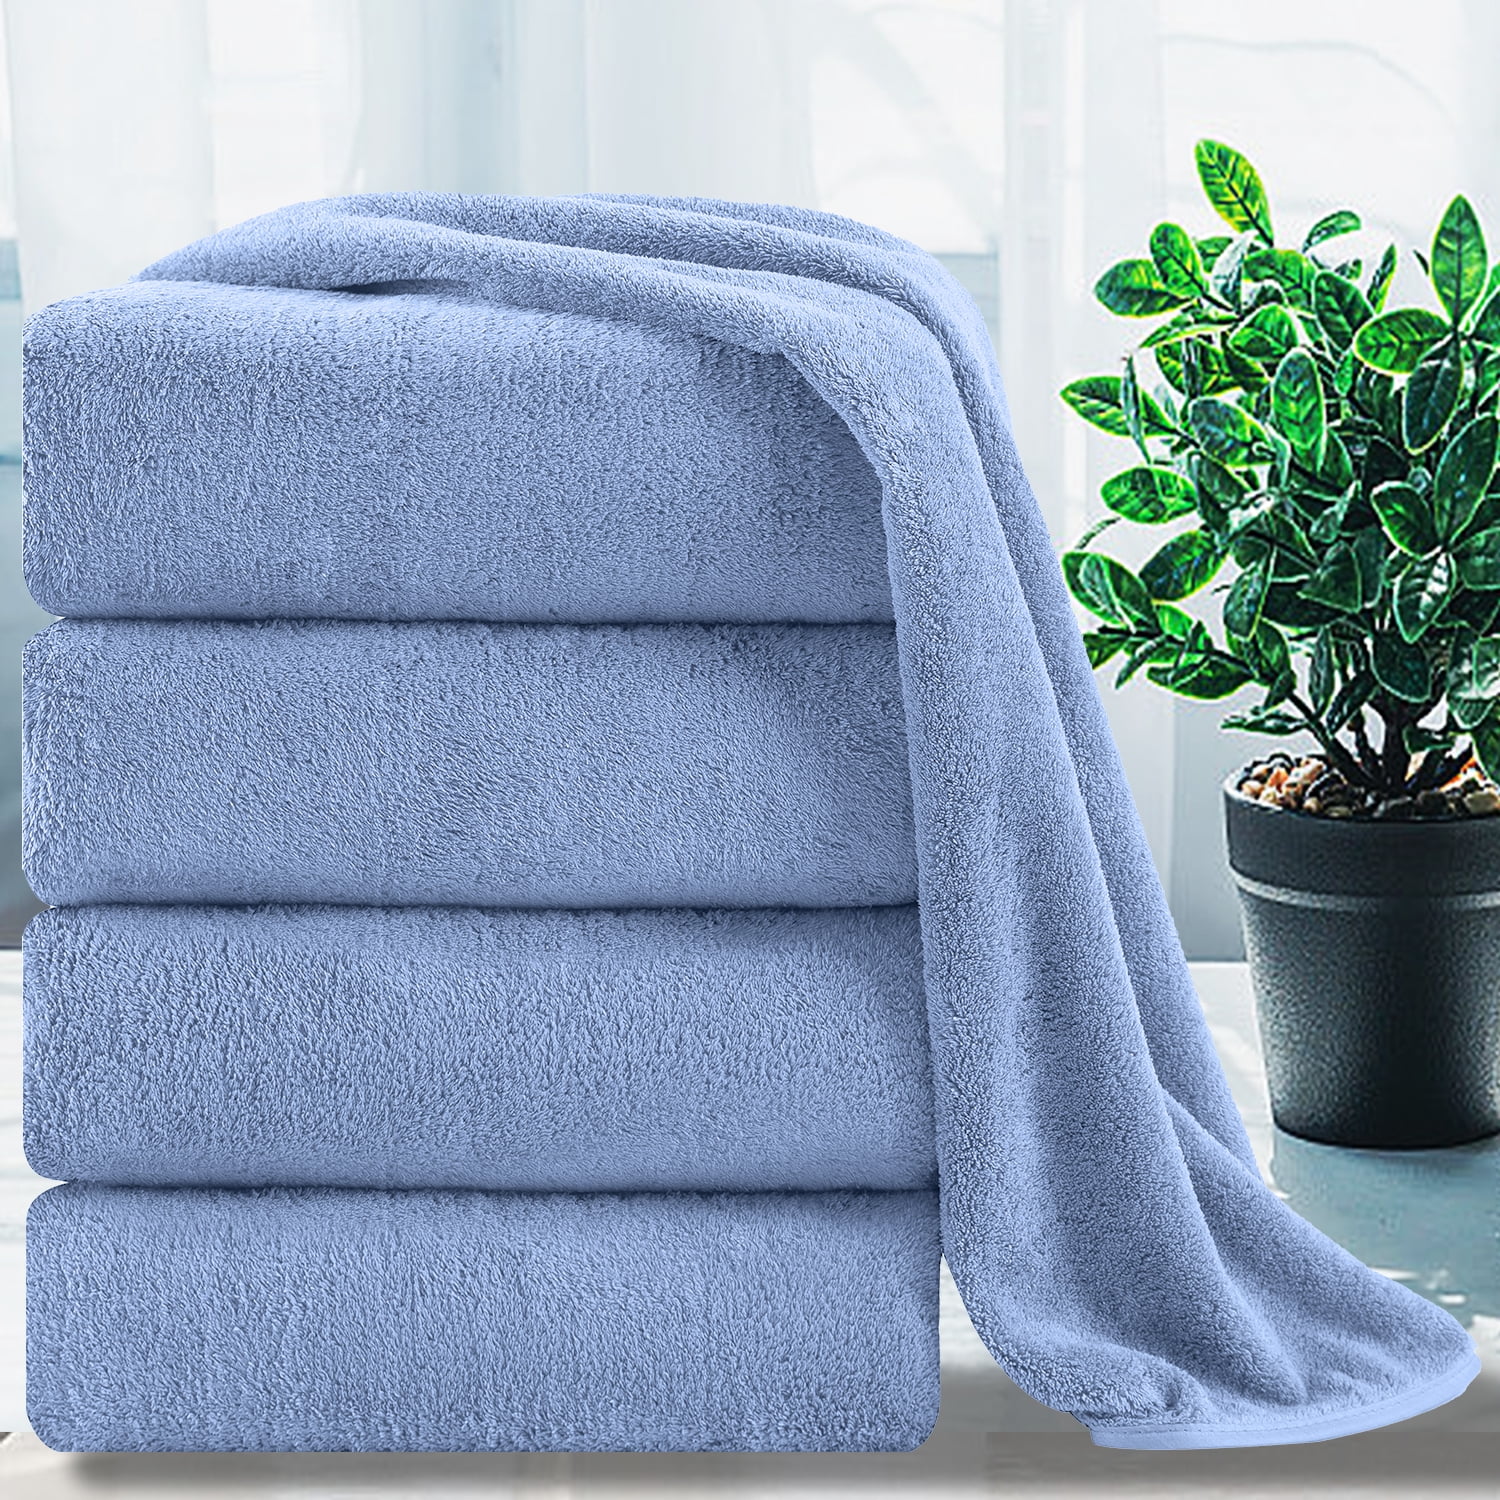 Extra Large Oversized Vibrant Sea Blue Towel Set - Highly